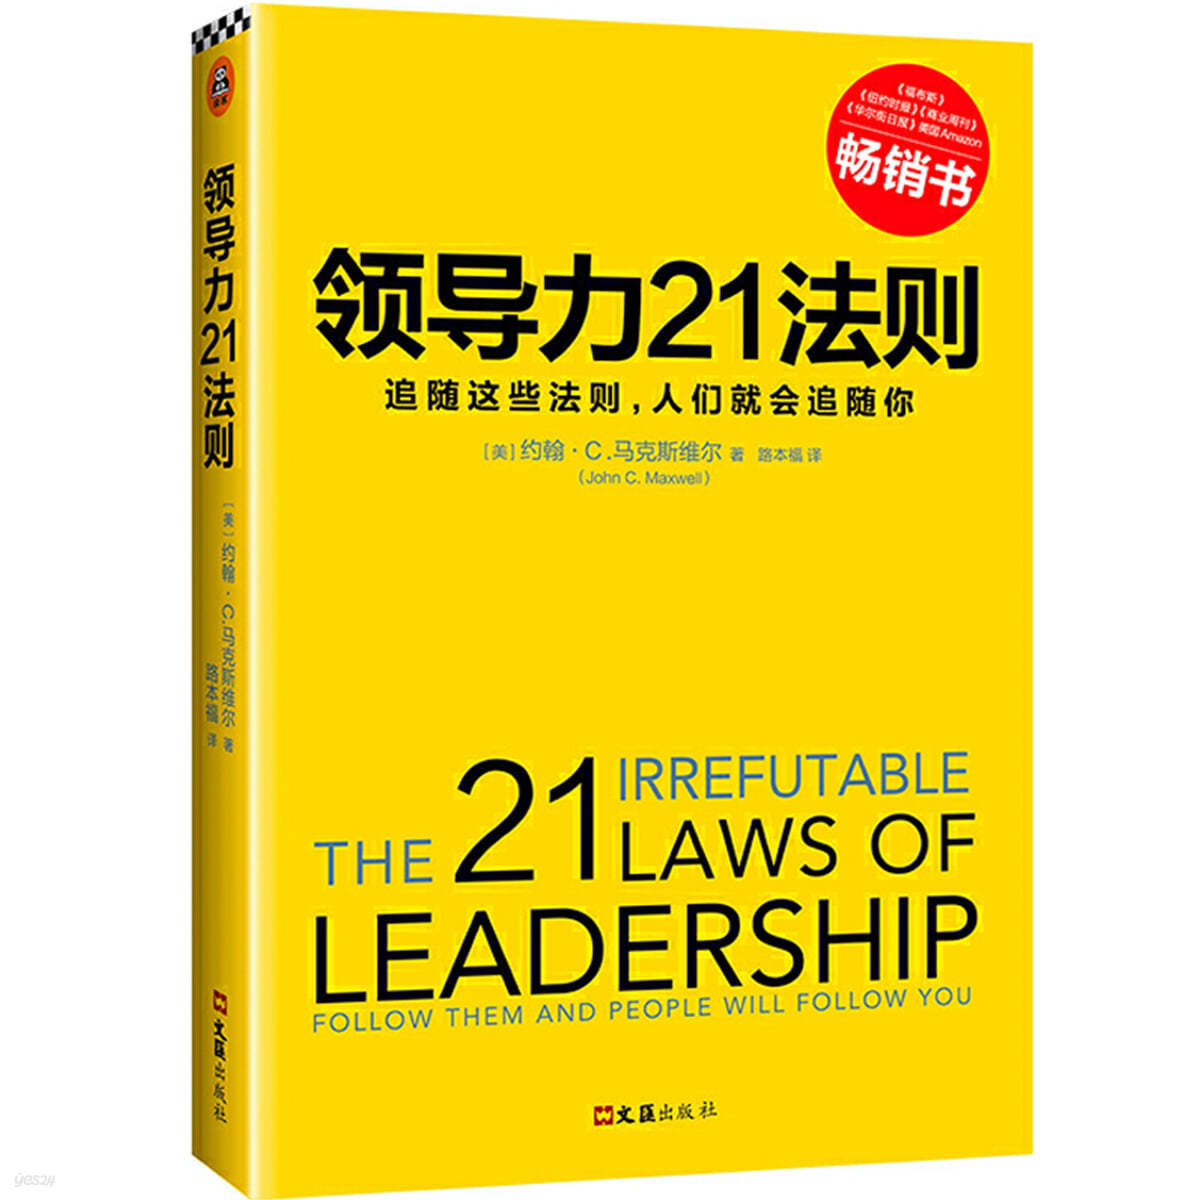 존맥스웰 리더십 불변의 법칙(중문판) 領導力21法則:追隨這些法則，人們就會追隨妳 리더십 21법칙